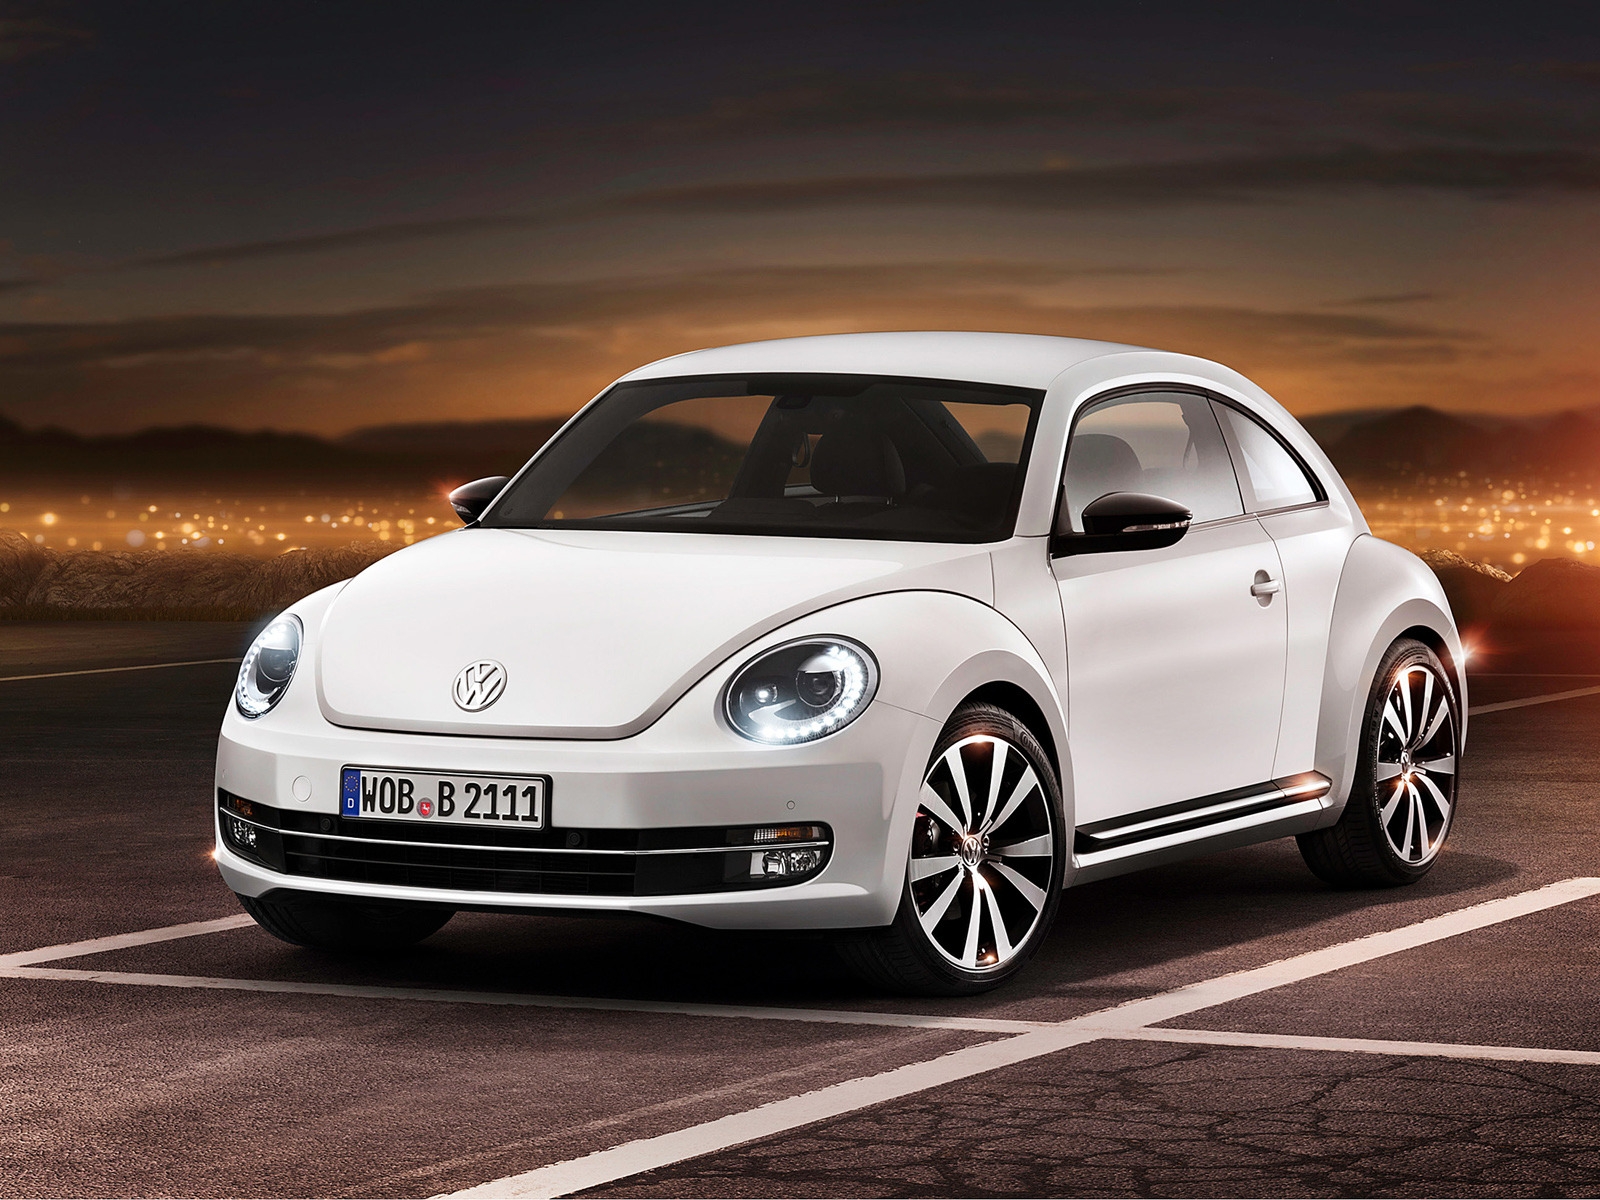 2012 Volkswagen Beetle for 1600 x 1200 resolution